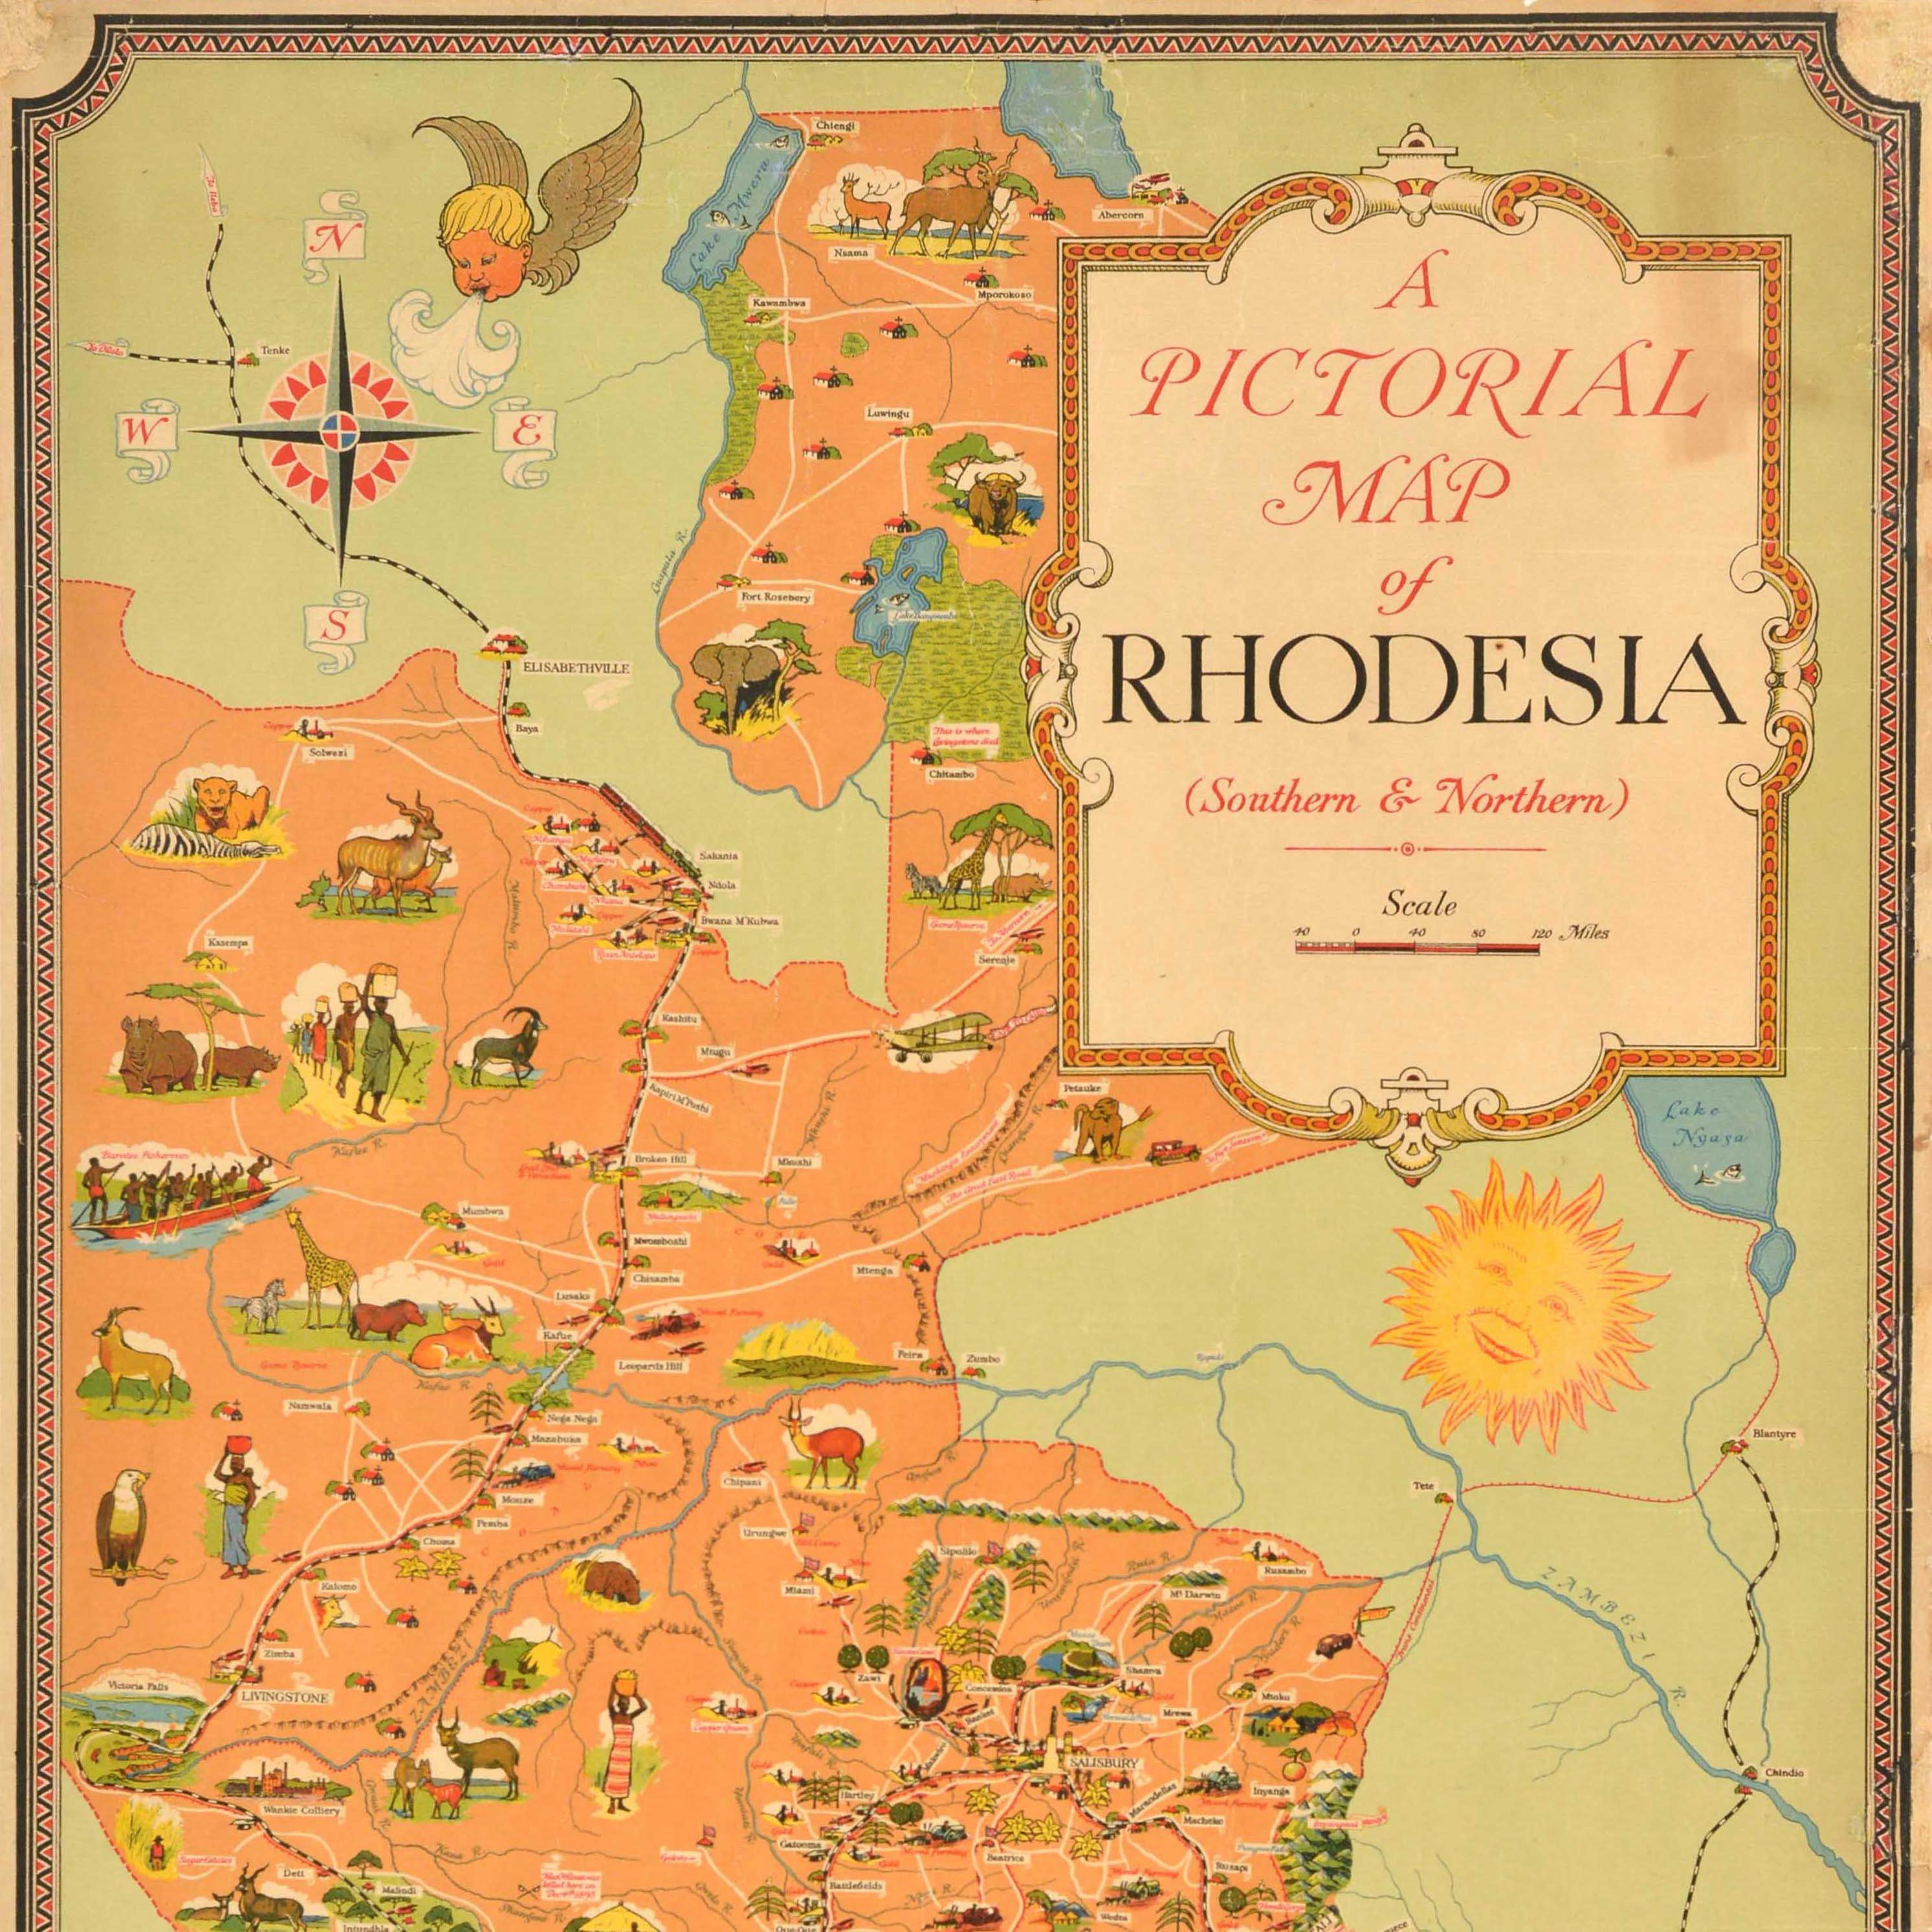 Original Vintage-Reiseplakat - A Pictorial Map of Rhodesia (Southern & Northern) - mit einer farbenfrohen Karte der Region mit den Eisenbahn- und Straßenrouten und Illustrationen von Gebäuden, Rindern, Menschen, Bäumen und Seen, Hügeln, Booten,